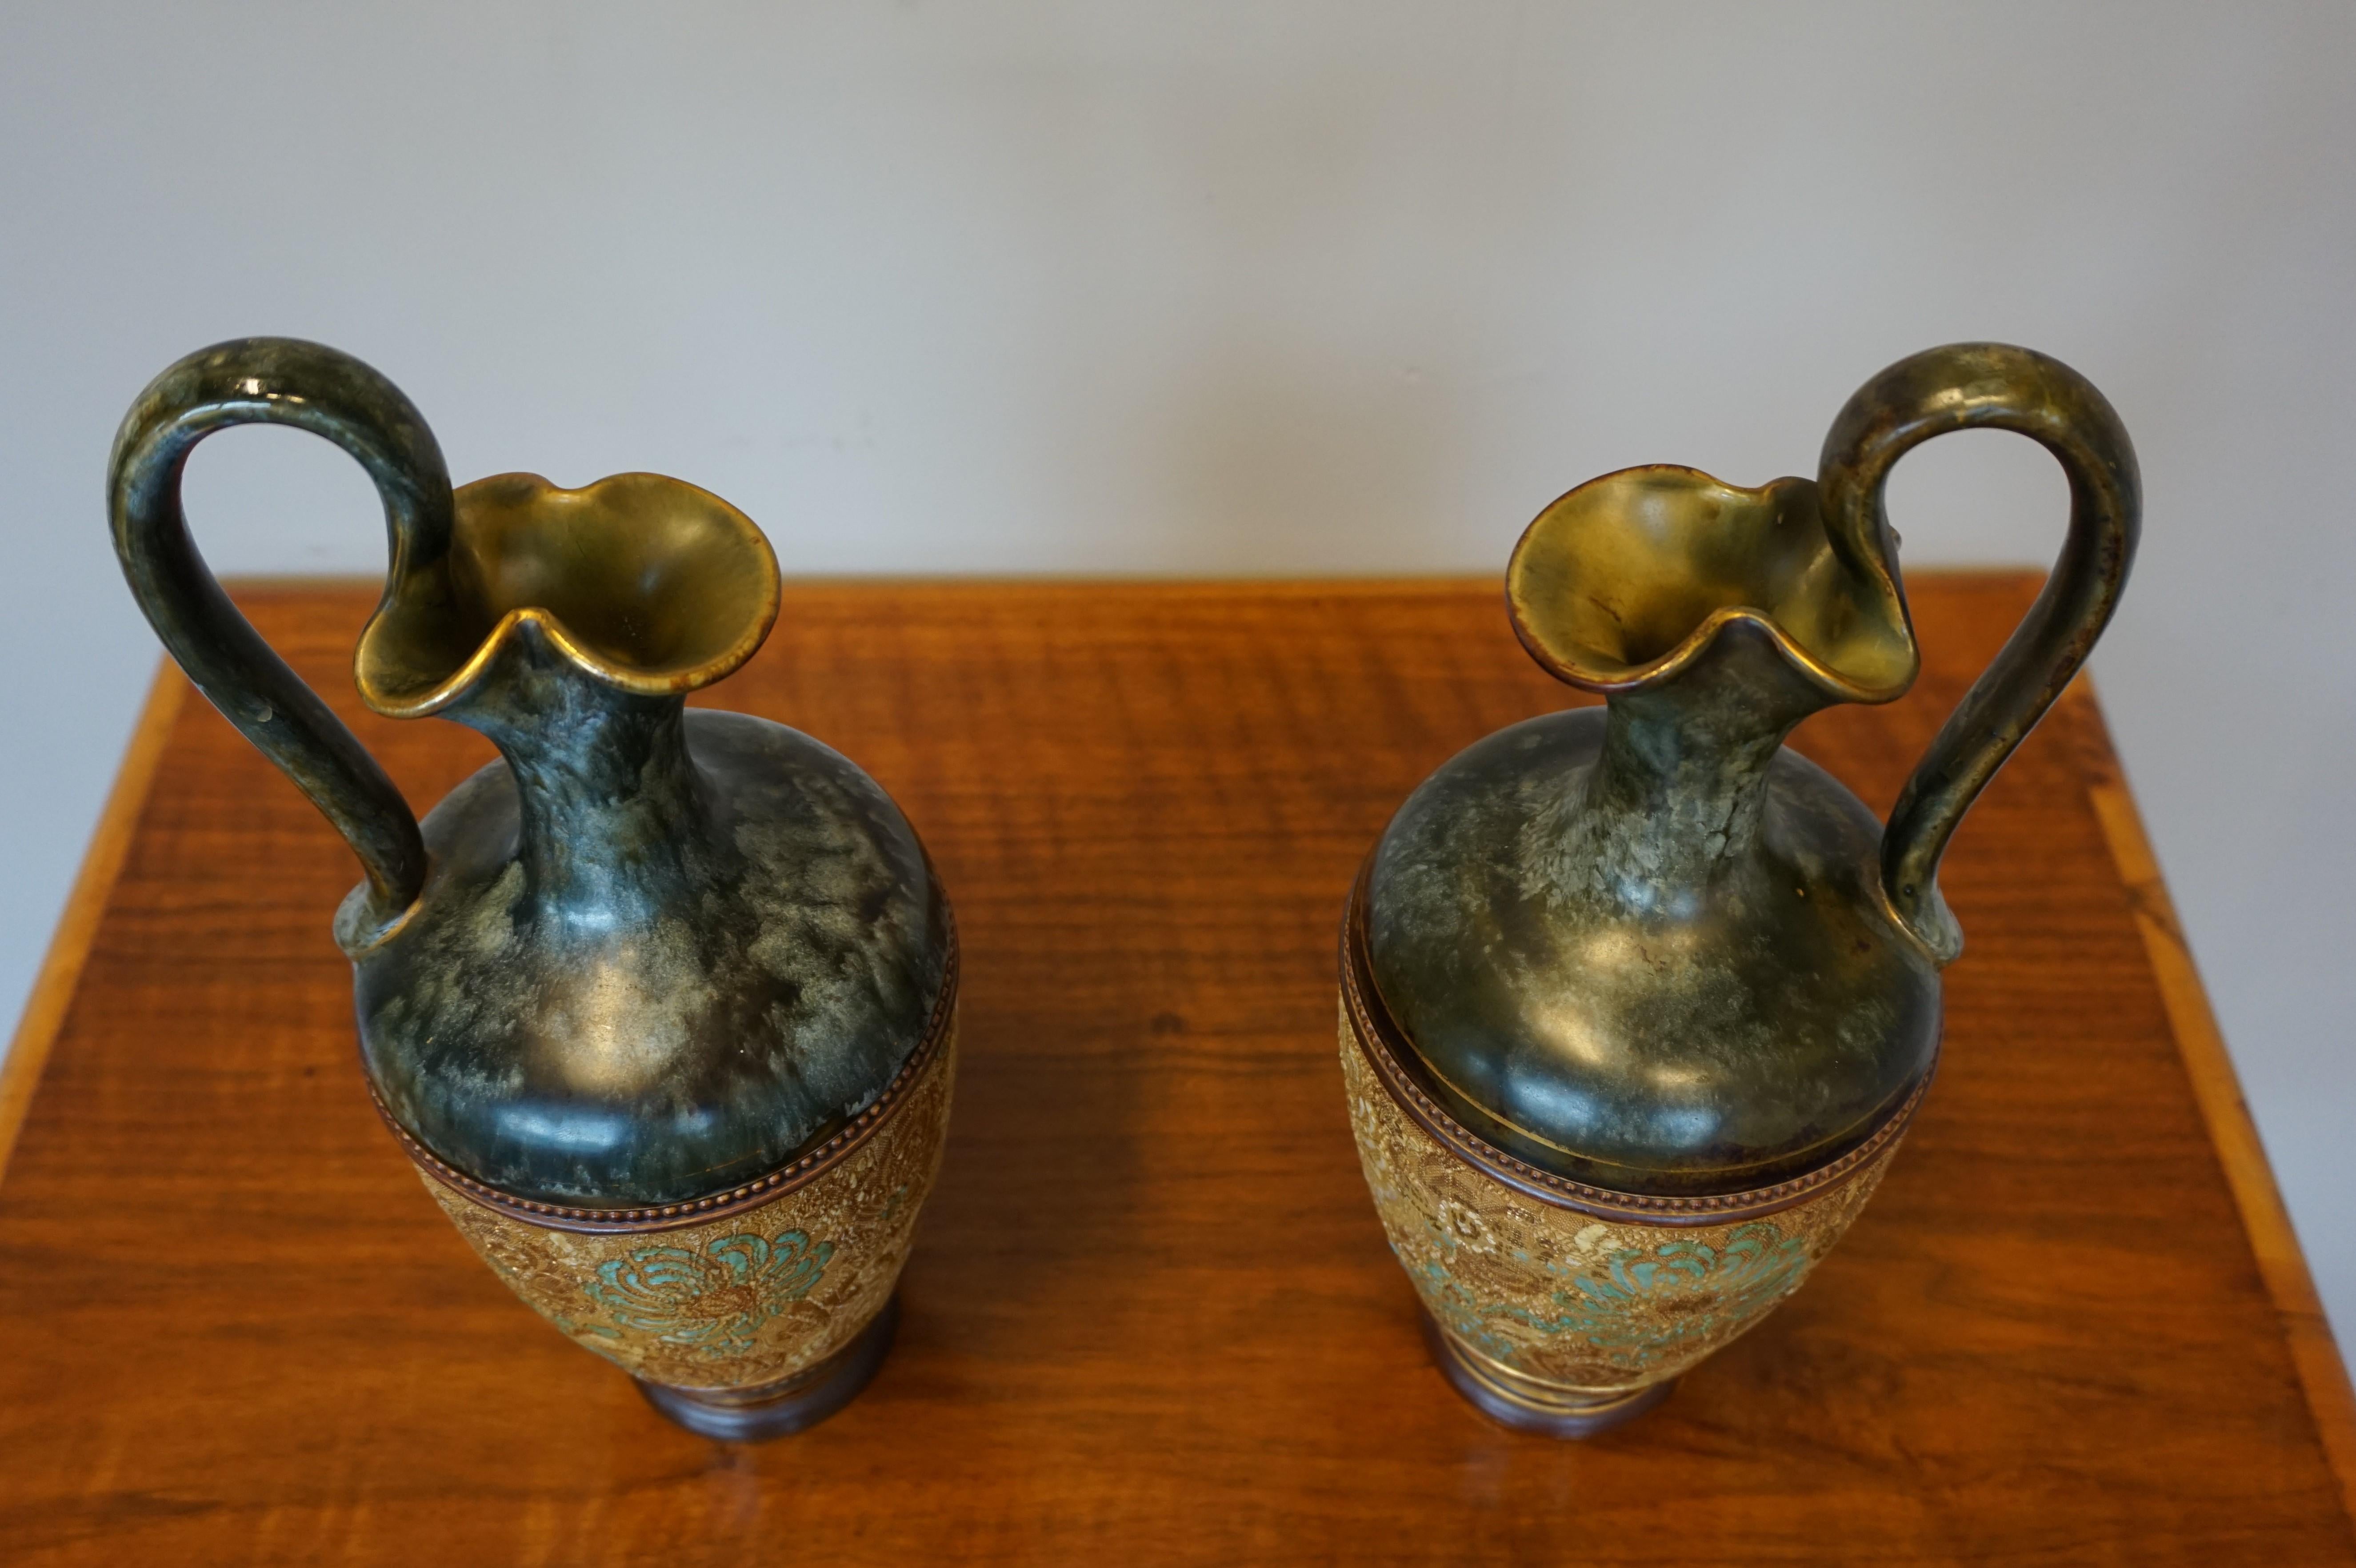 Rare Pair of Doulton Lambeth Vases with Striking Golden & Enameled Flower Decor For Sale 8